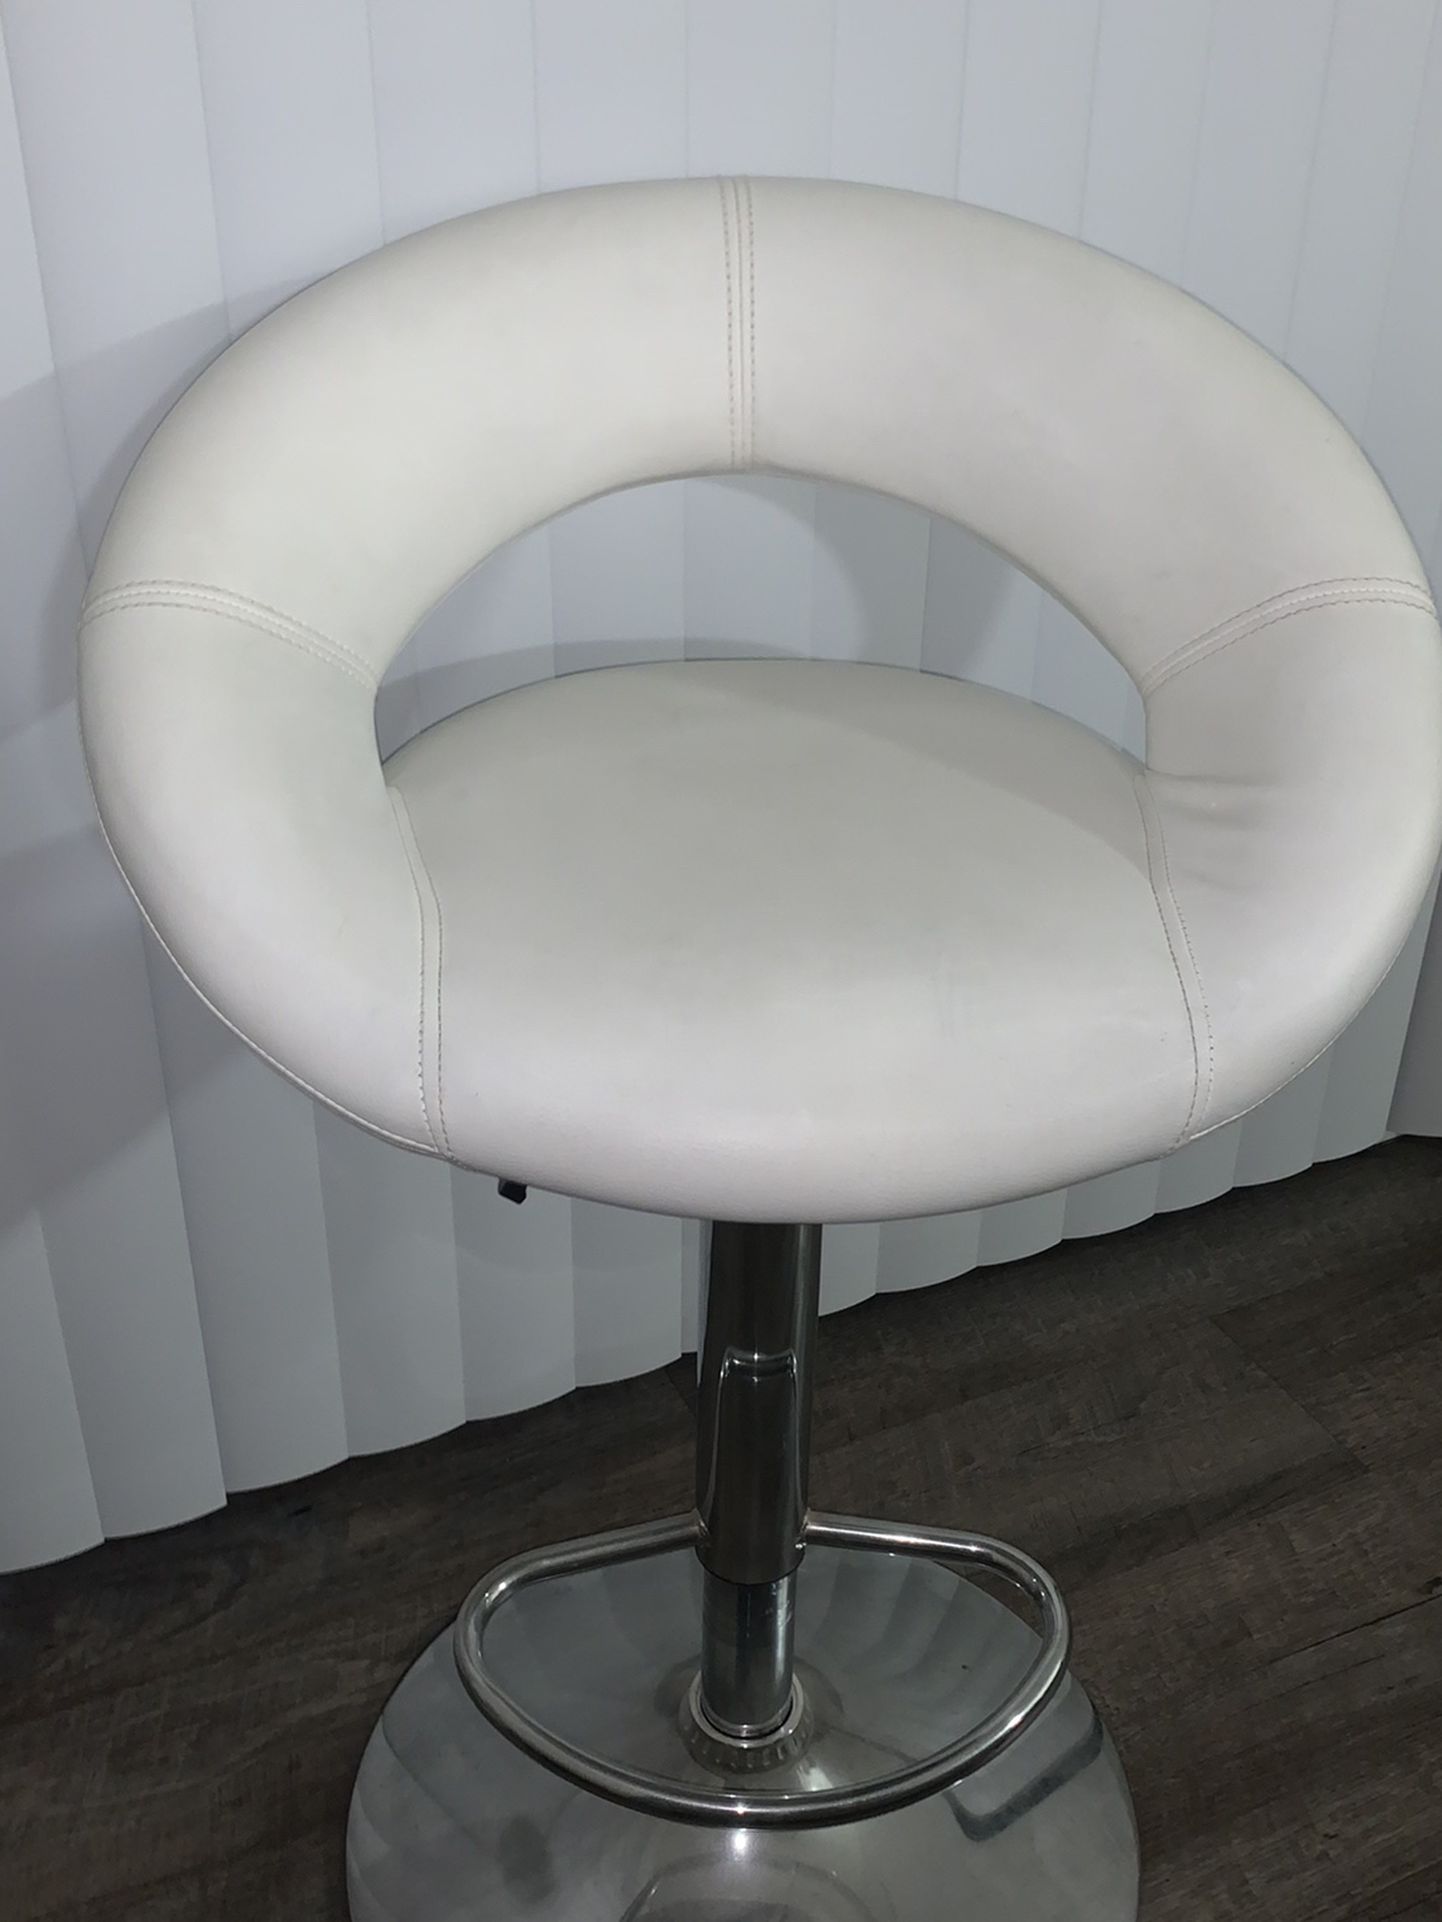 White bar stool chair